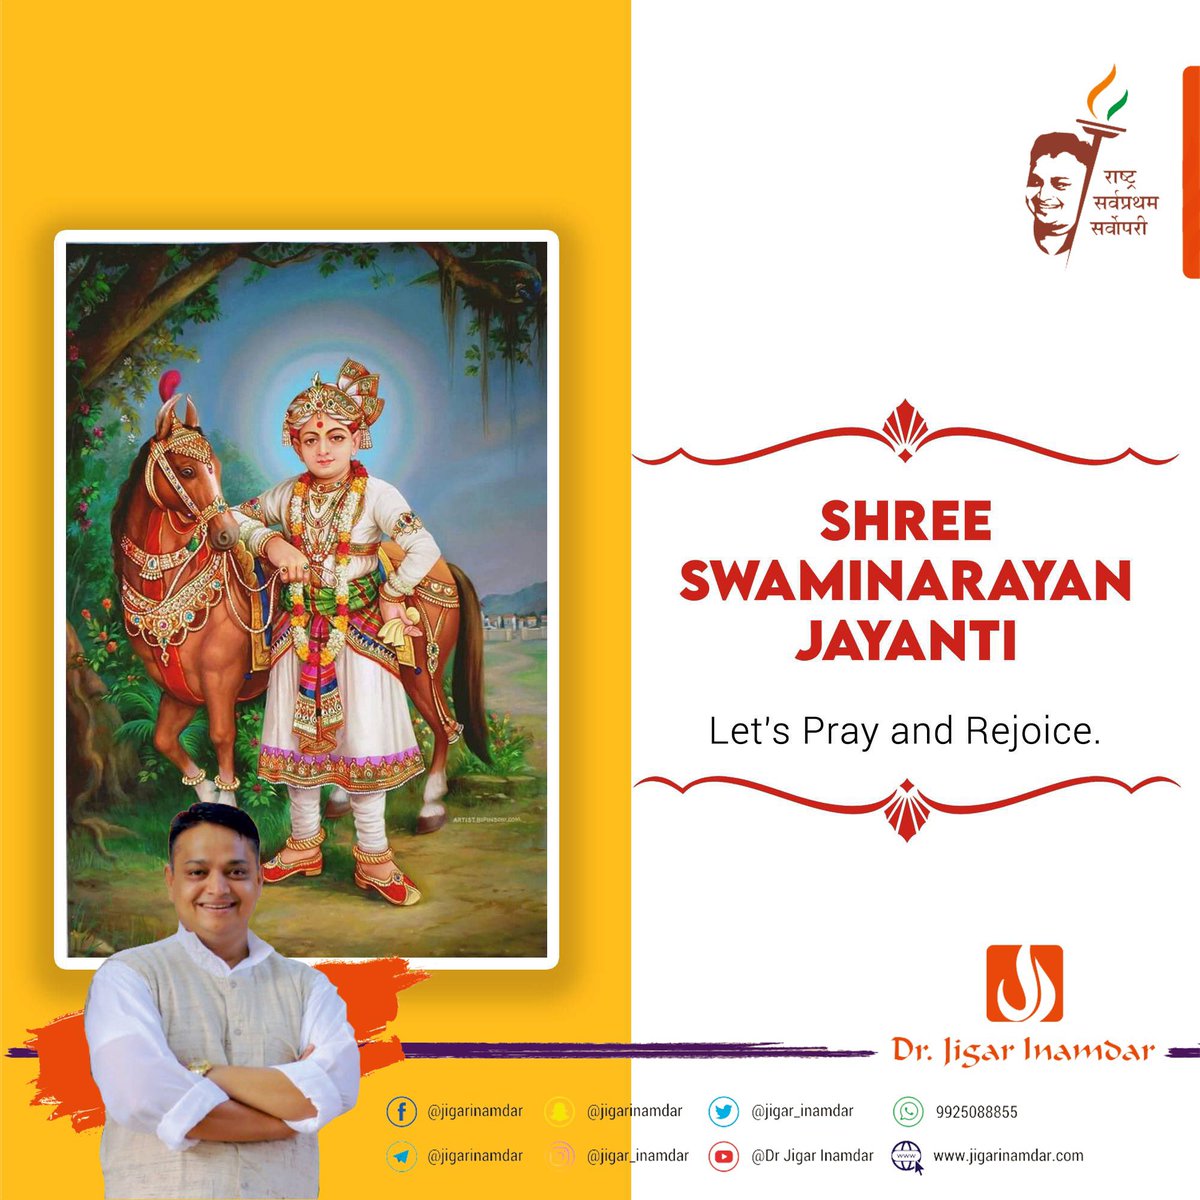 #SwaminarayanJayanti
#JaySwaminarayan
#JigarInamdar
#DrJigarInamdar
#Youth
#Leader
#Leadership